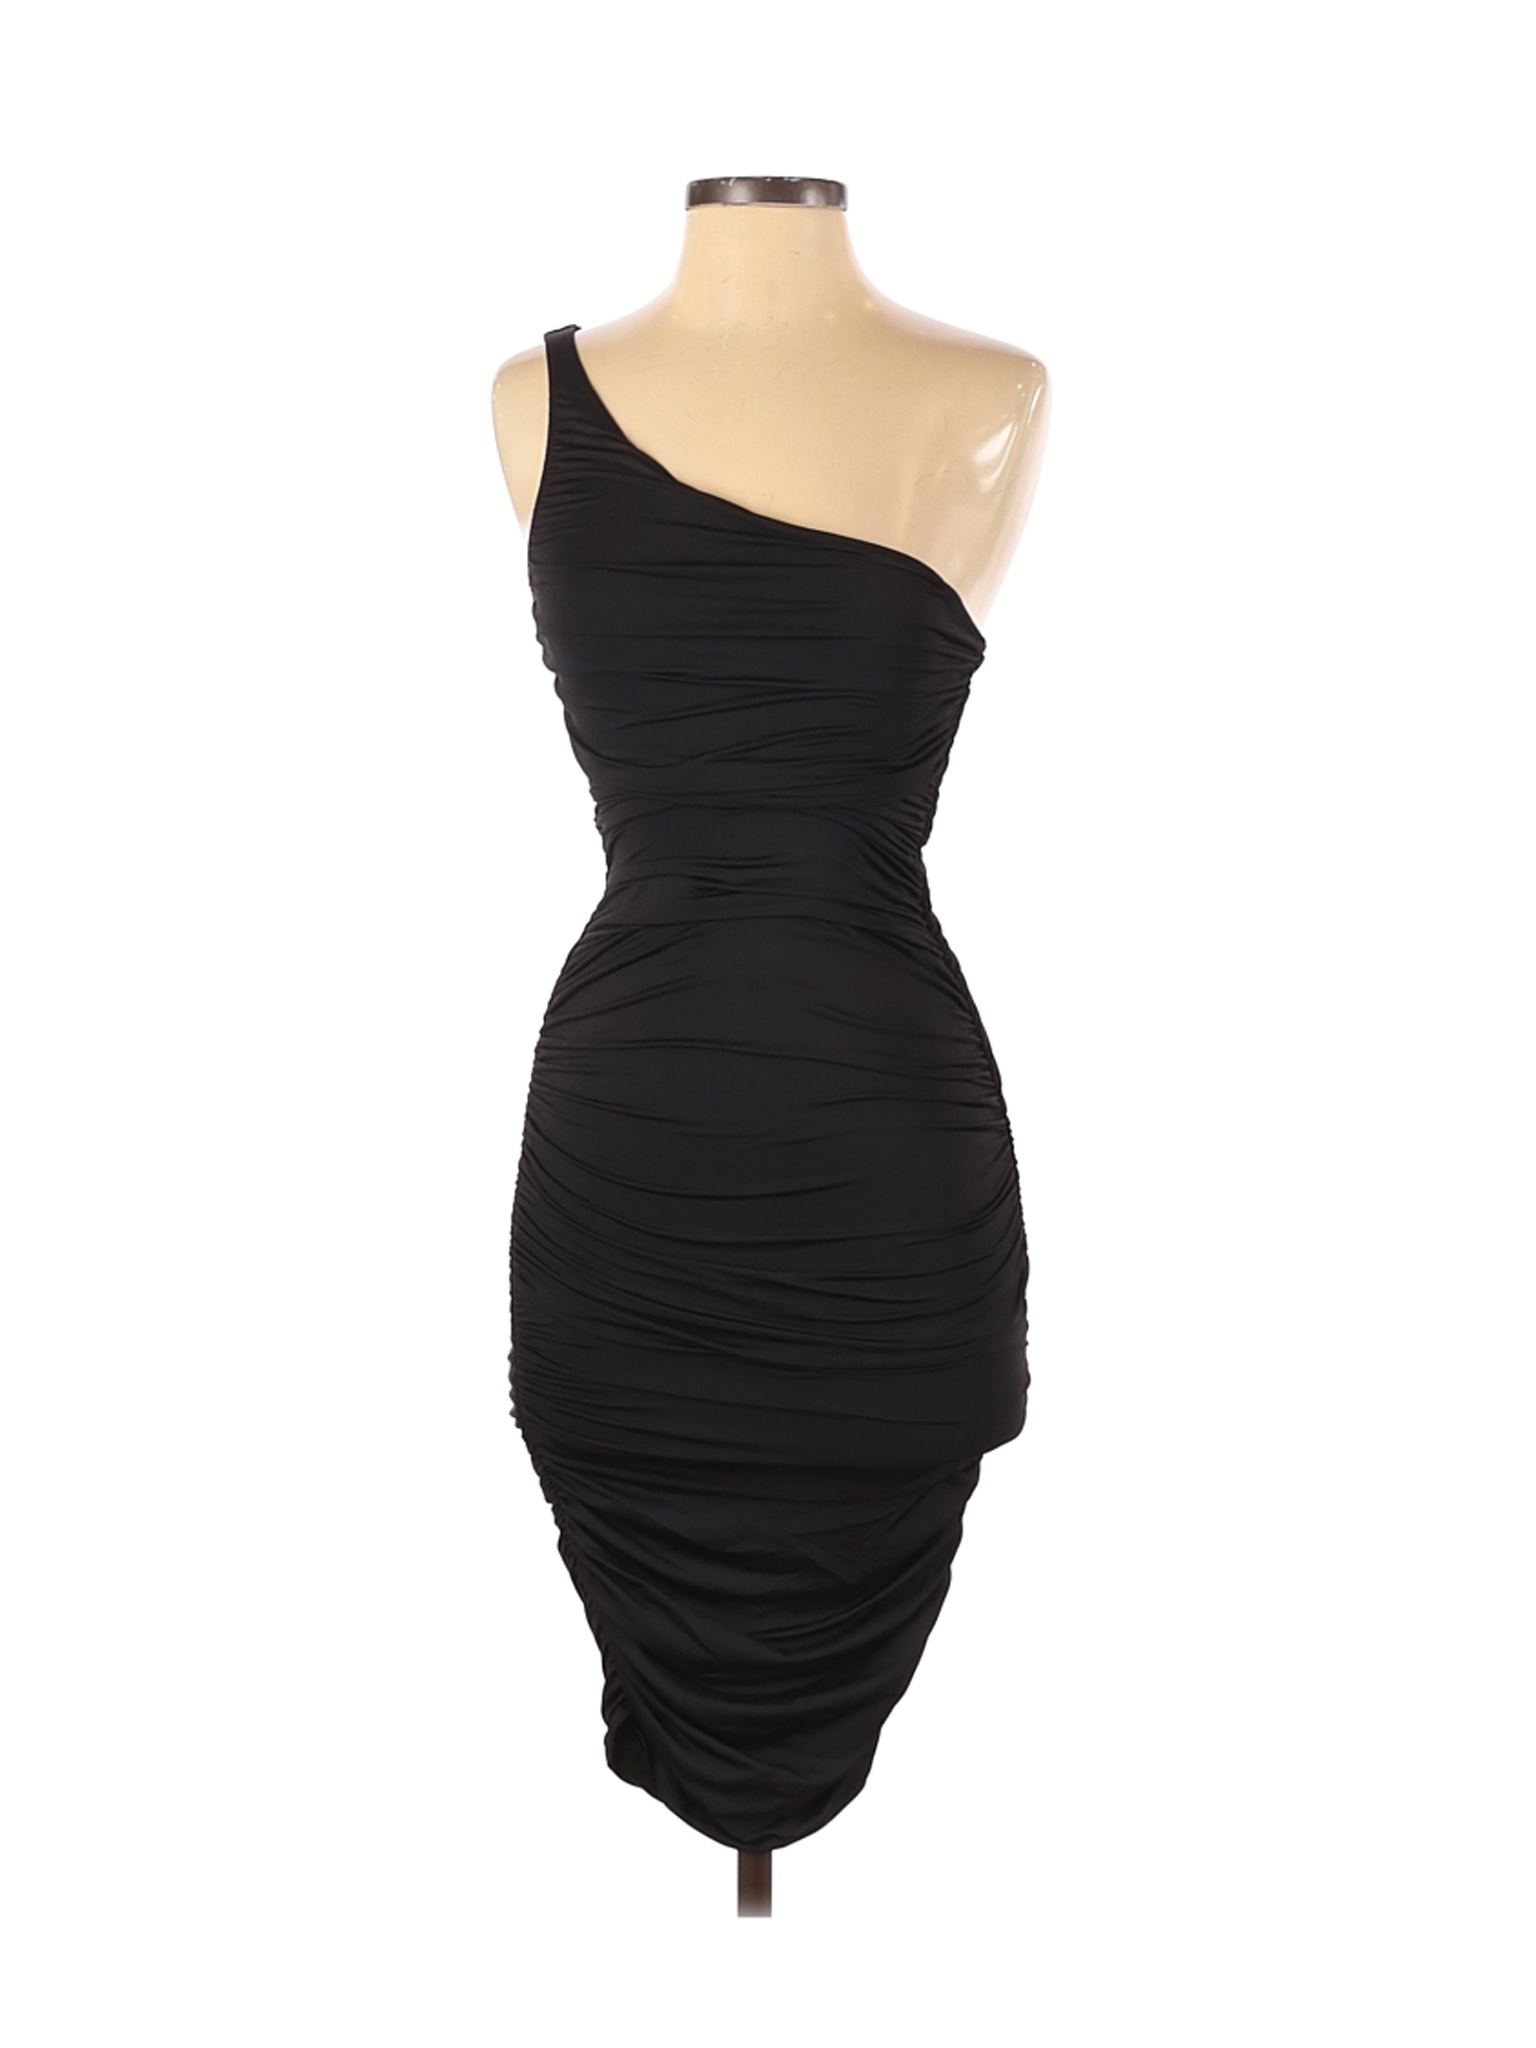 Fashion Nova Women Black Cocktail Dress XS | eBay